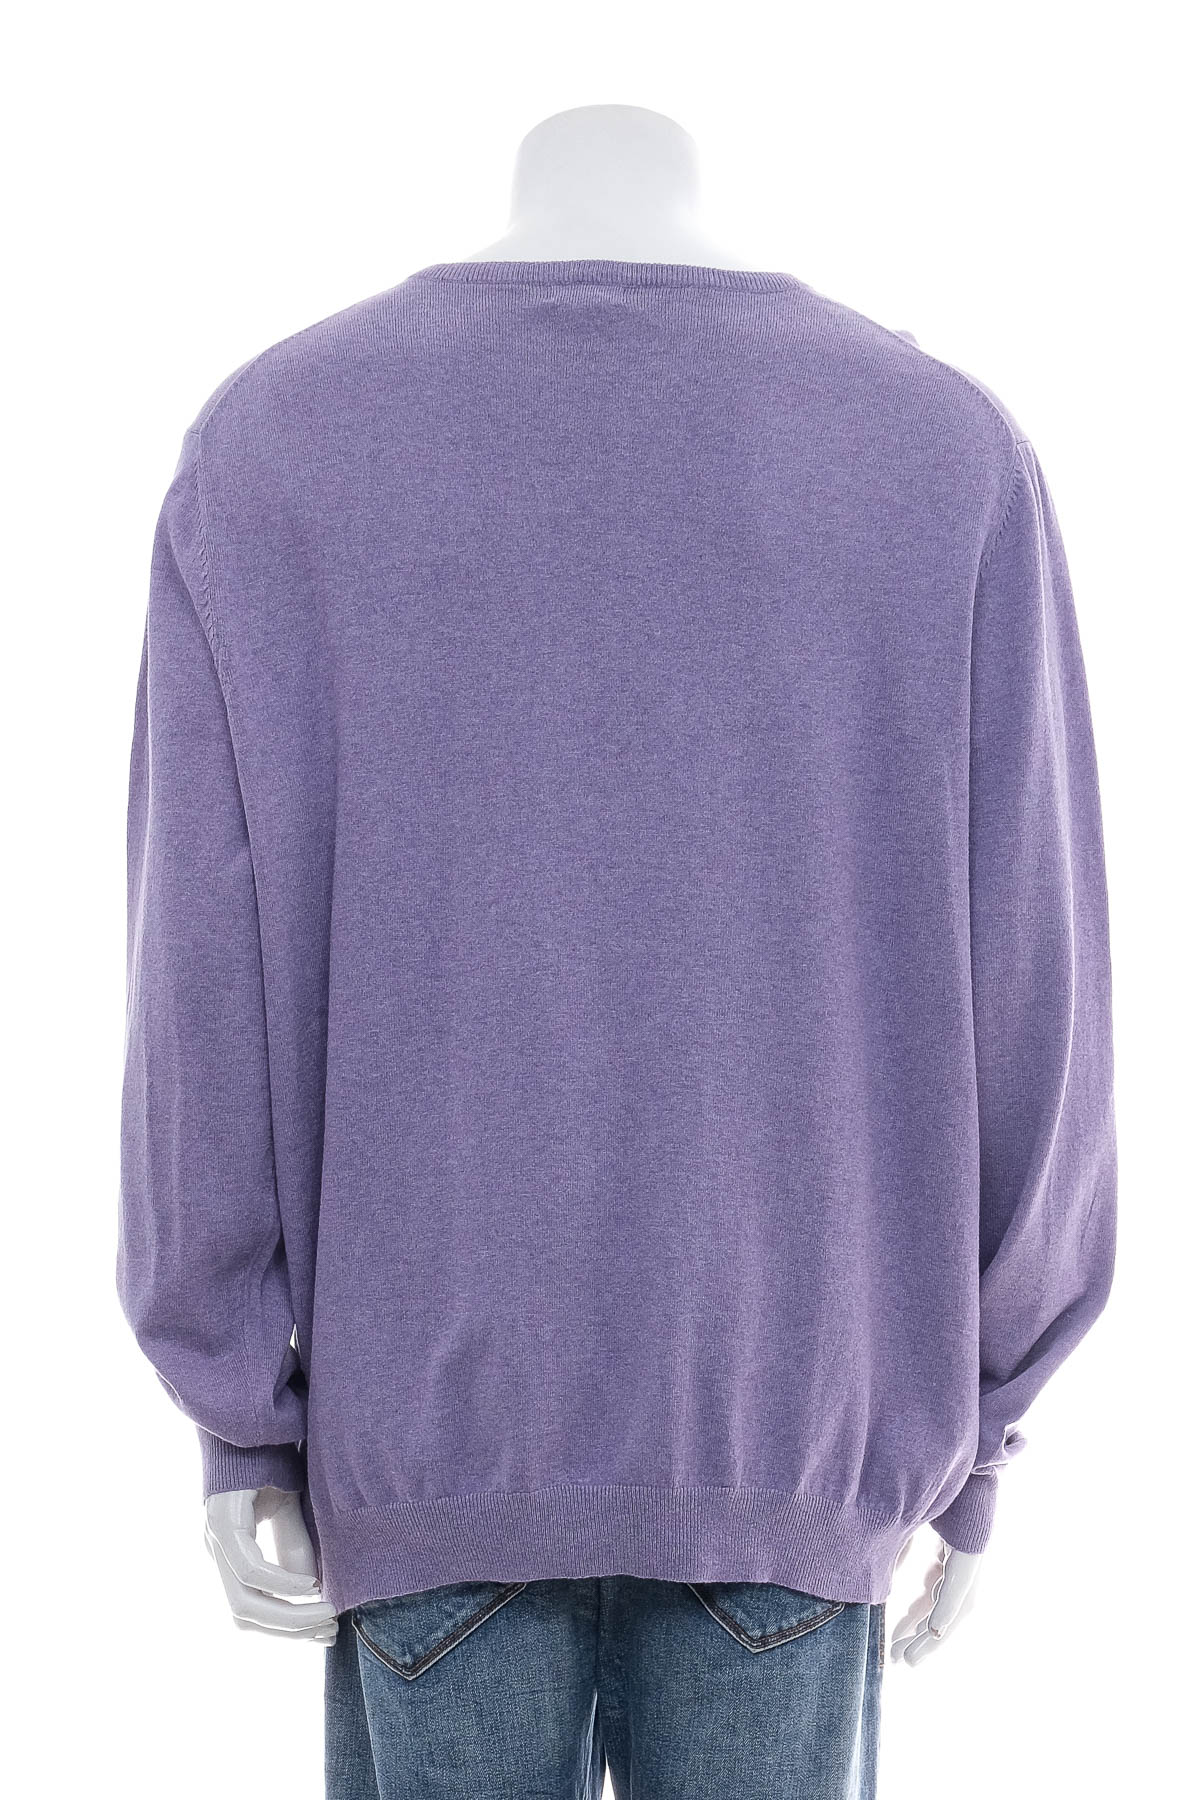 Men's sweater - Merona - 1